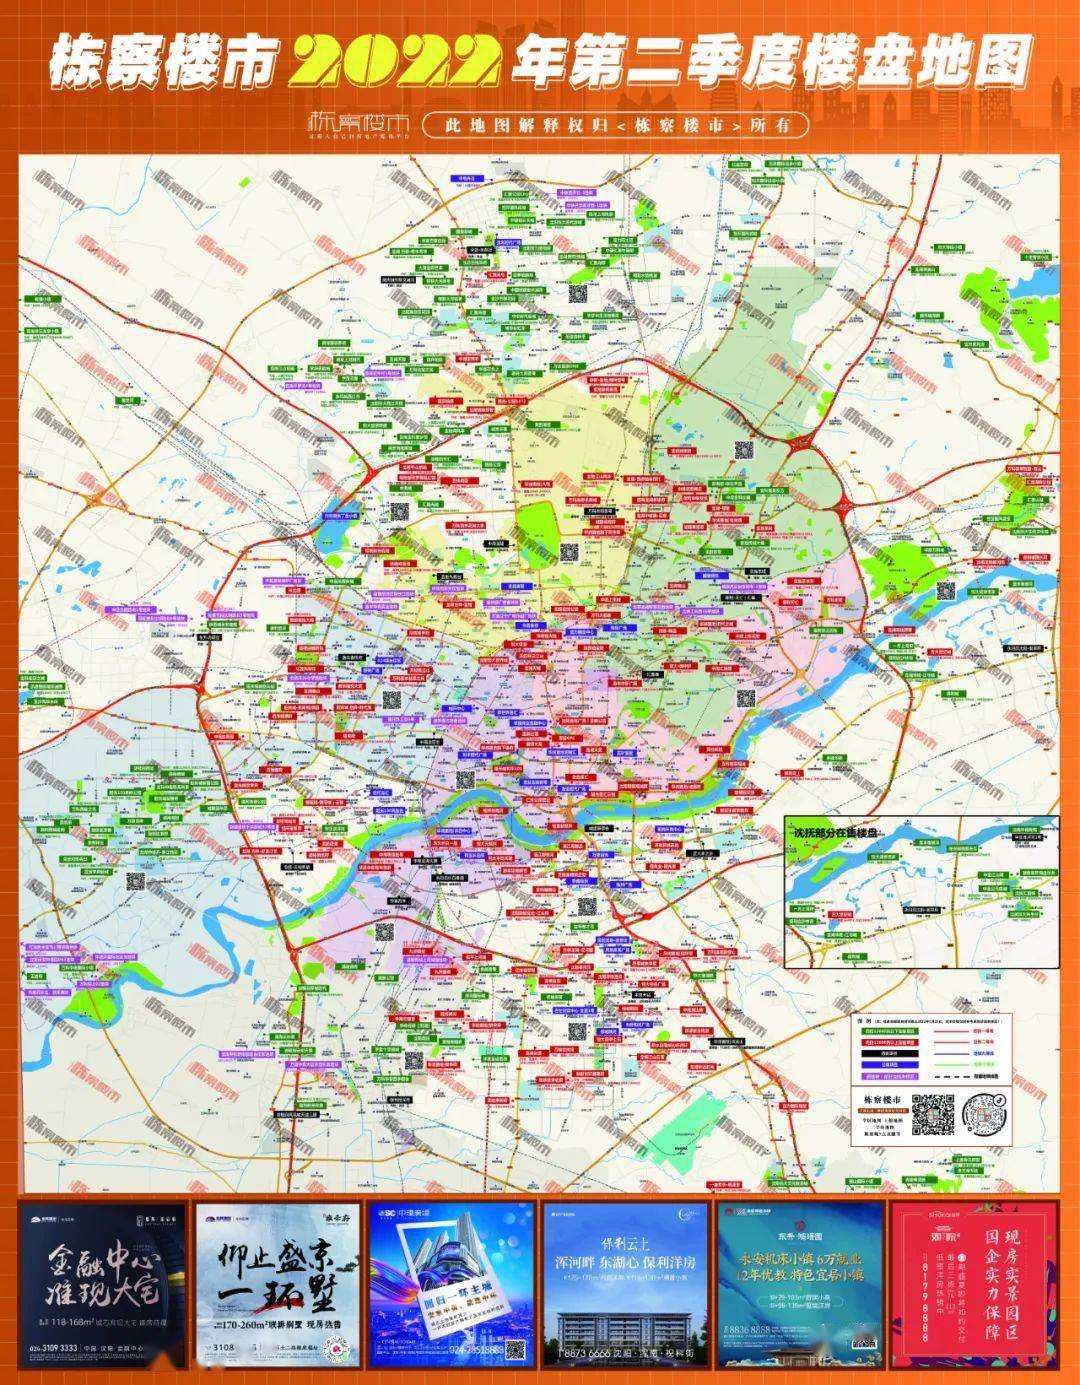 沈阳市区地图|沈阳市区地图全图高清版大图片|旅途风景图片网|www.visacits.com